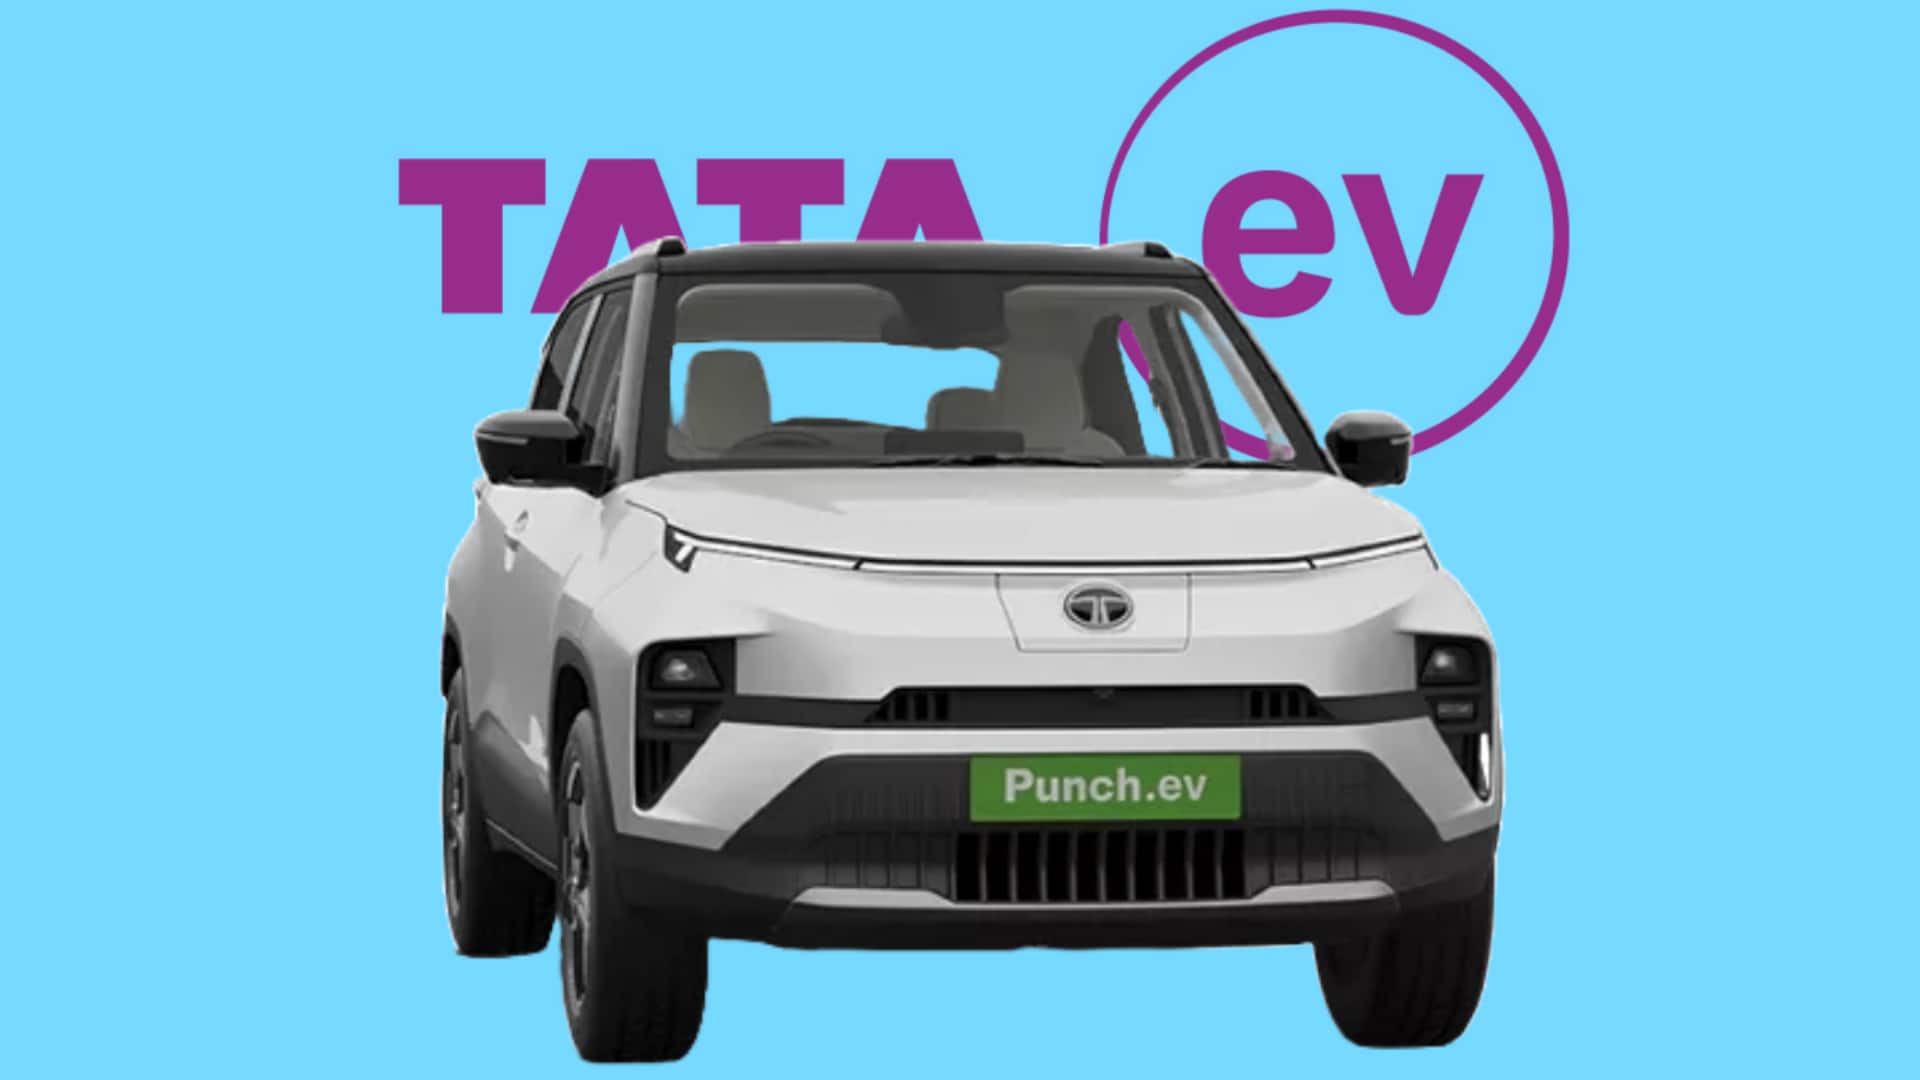 टाटा पंच EV भारतीय बाजार में 17 जनवरी को होगी लॉन्च, मिलेंगे ये फीचर 